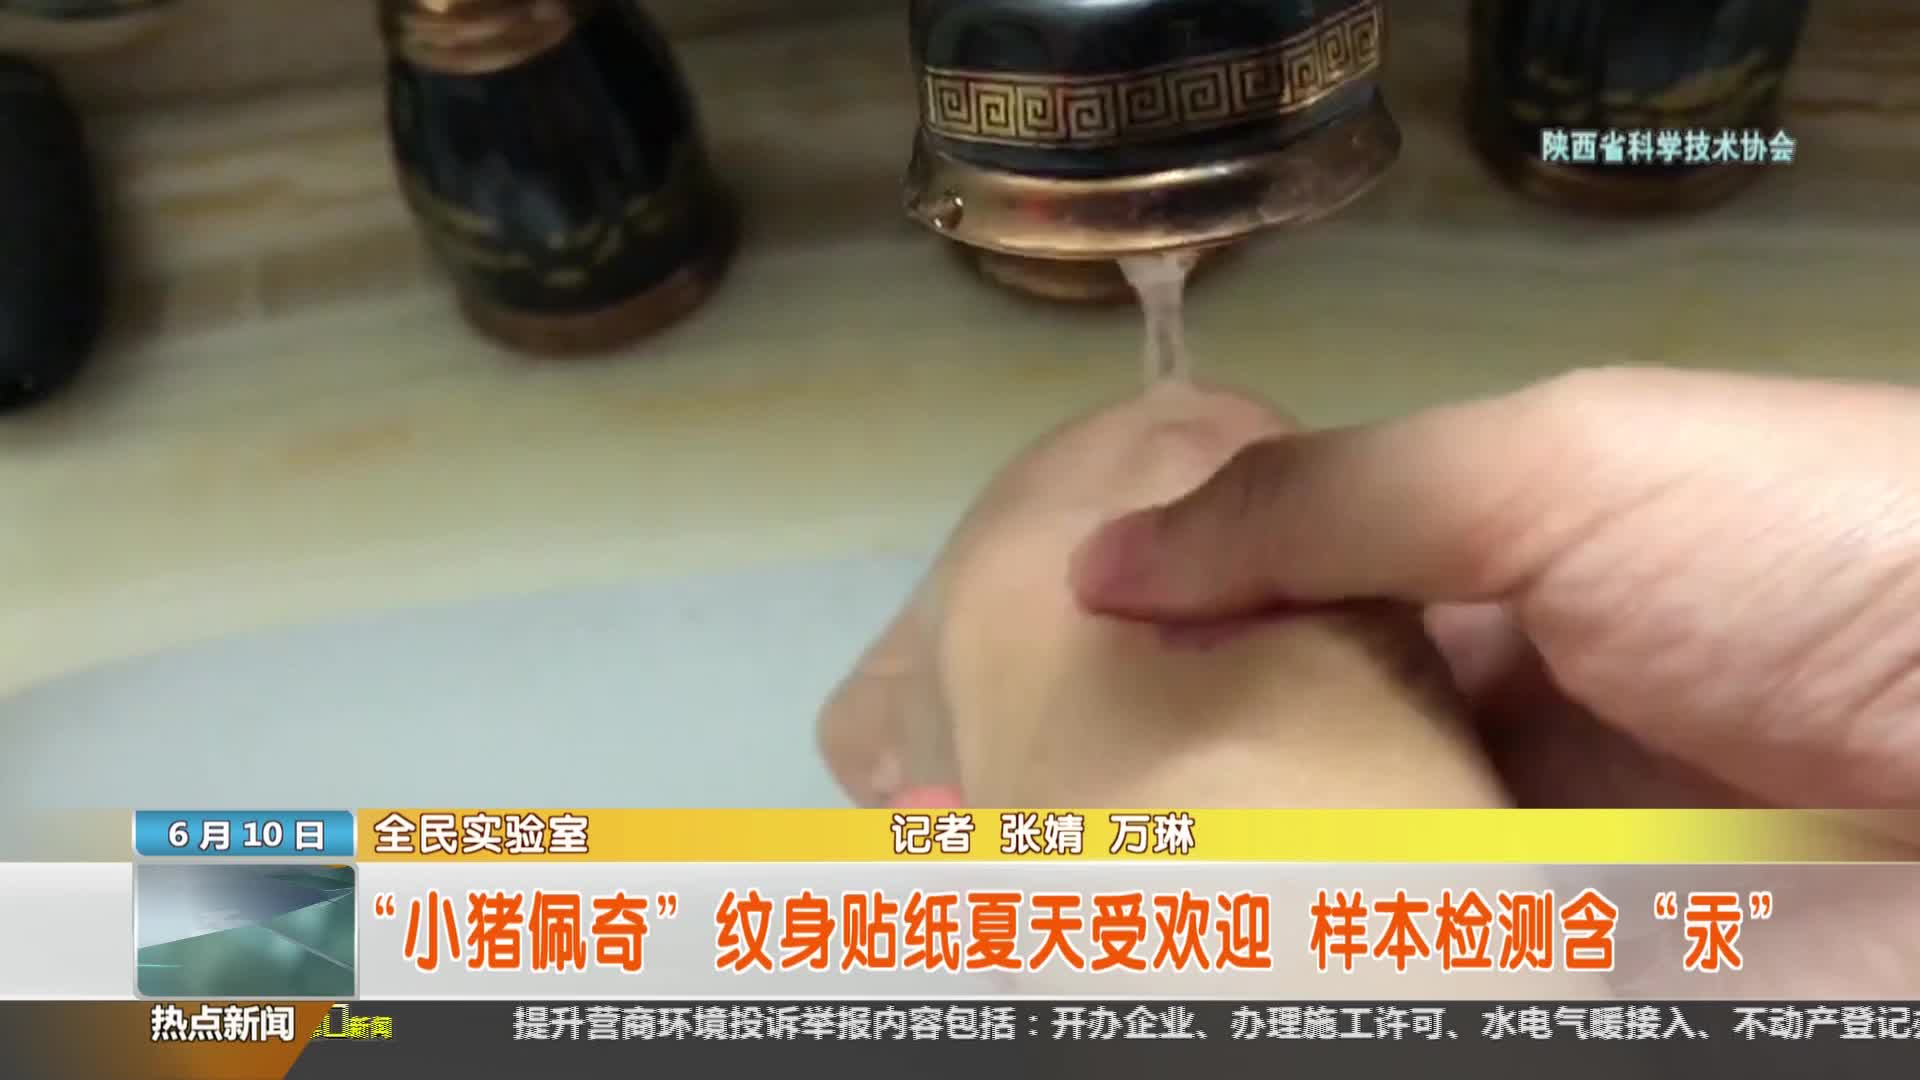 陕西省科学技术协会【全民实验室】：“小猪佩奇”纹身贴纸夏天受欢迎 样本检测含“汞”